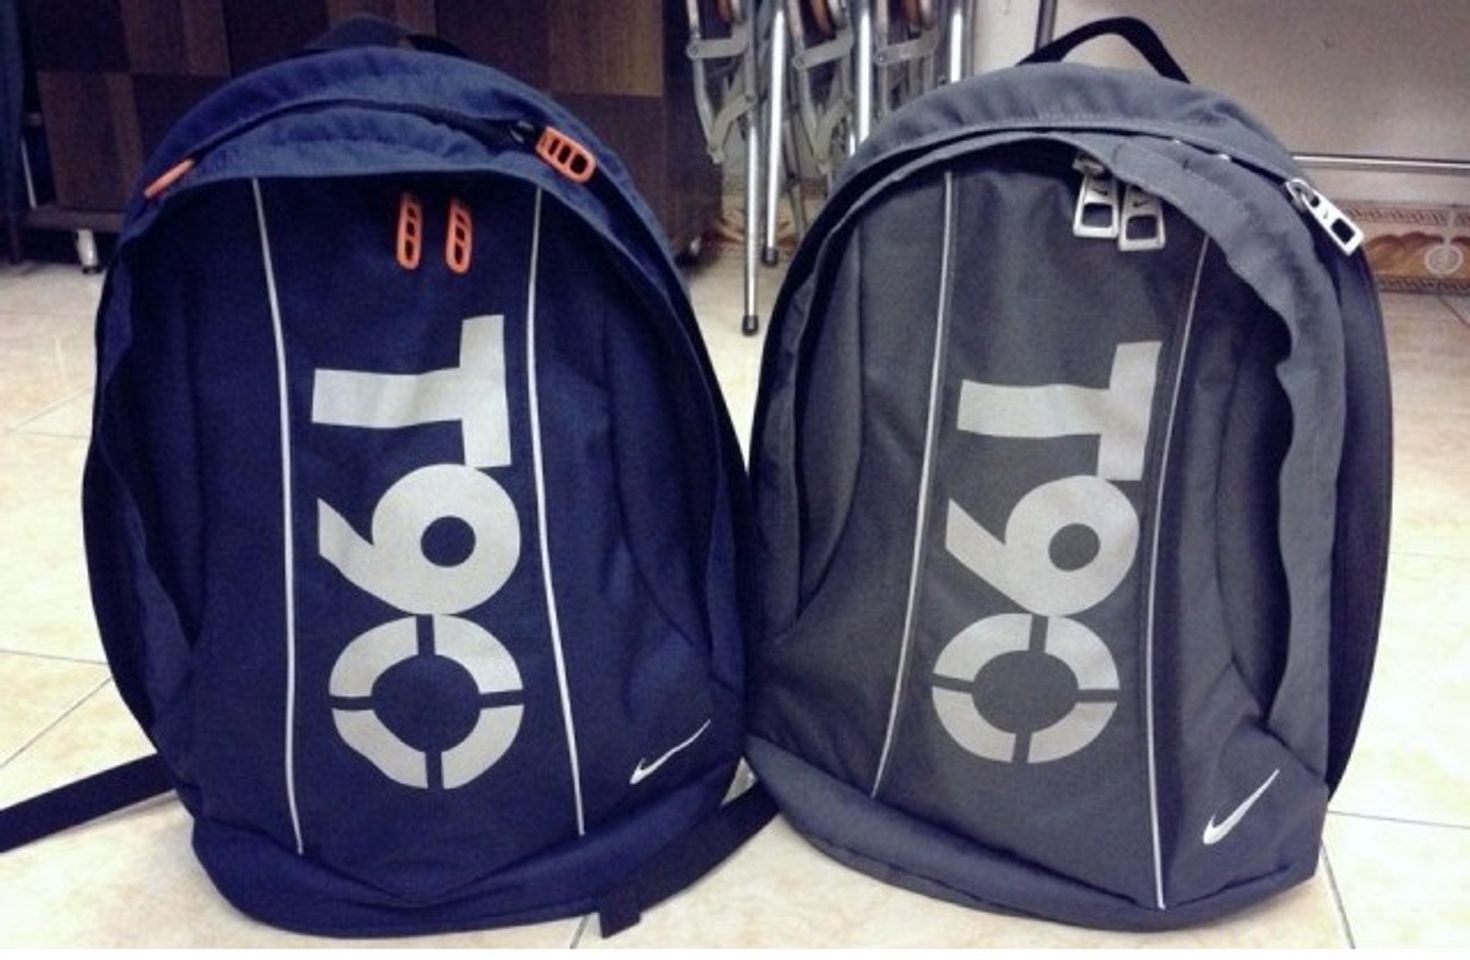 Balo thể thao Nike T90 Backpack chứa được nhiều đồ dùng